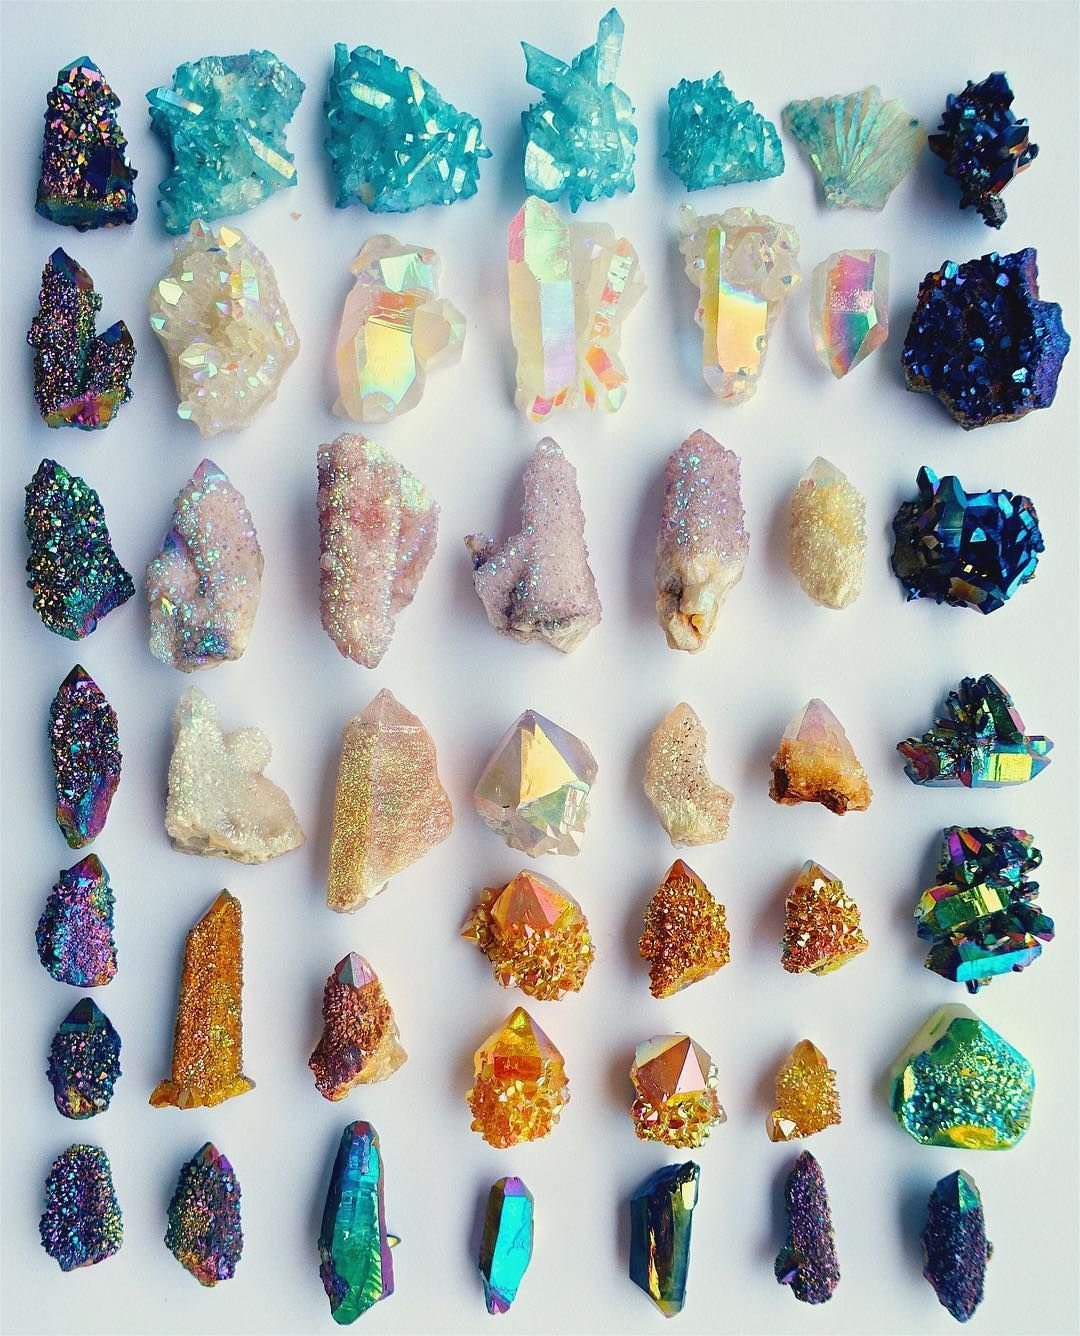 Драгоценные камни в природе как выглядят фото с названиями